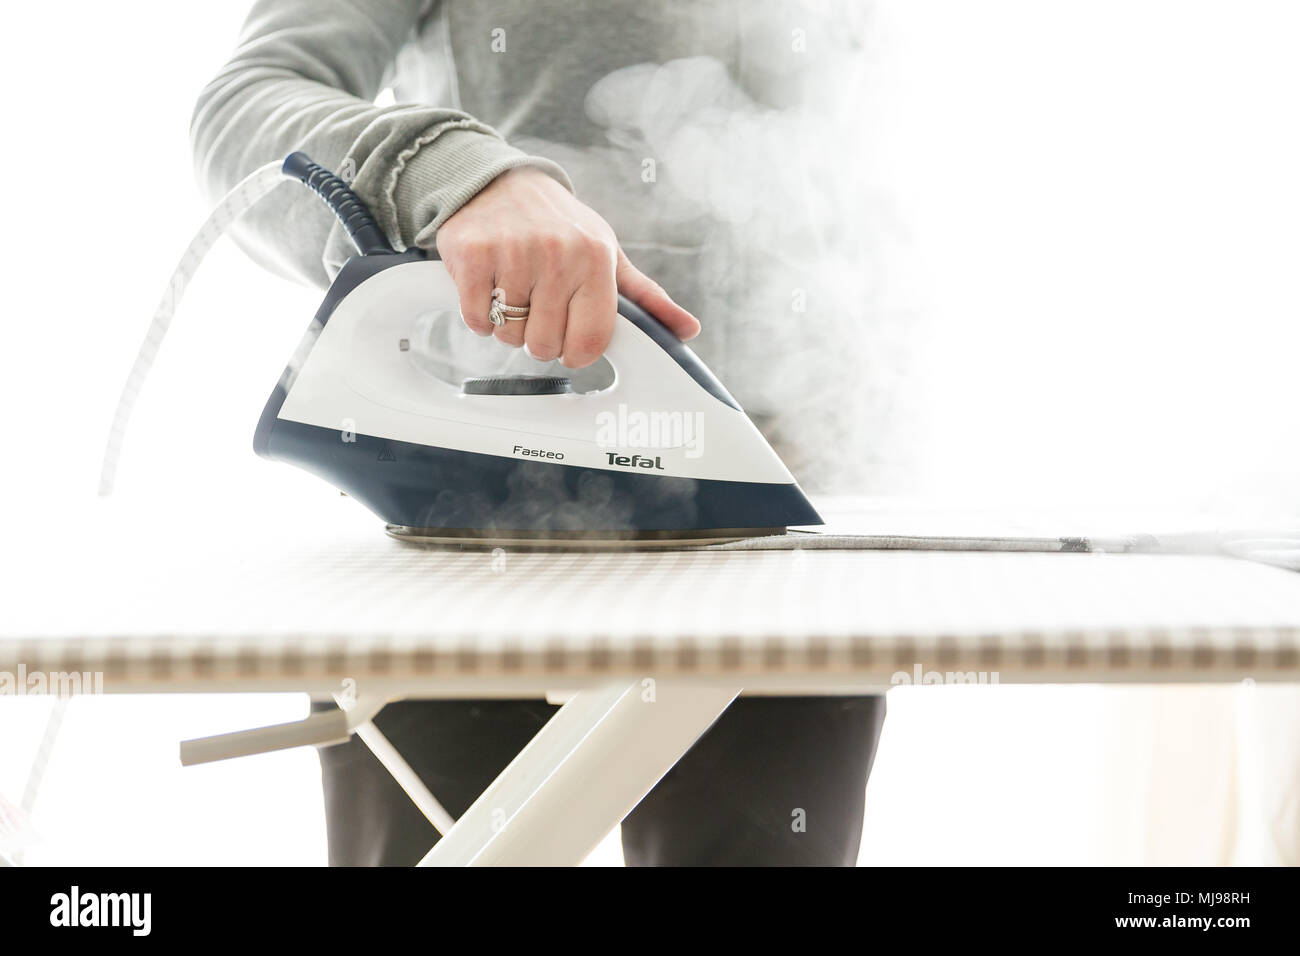 Bügeln mit dampfgenerator Bügeleisen. Nahaufnahme einer Hand, die heißen Dampf Bügeleisen auf dem Bügelbrett und Entfernen von Falten aus Stoff. Stockfoto